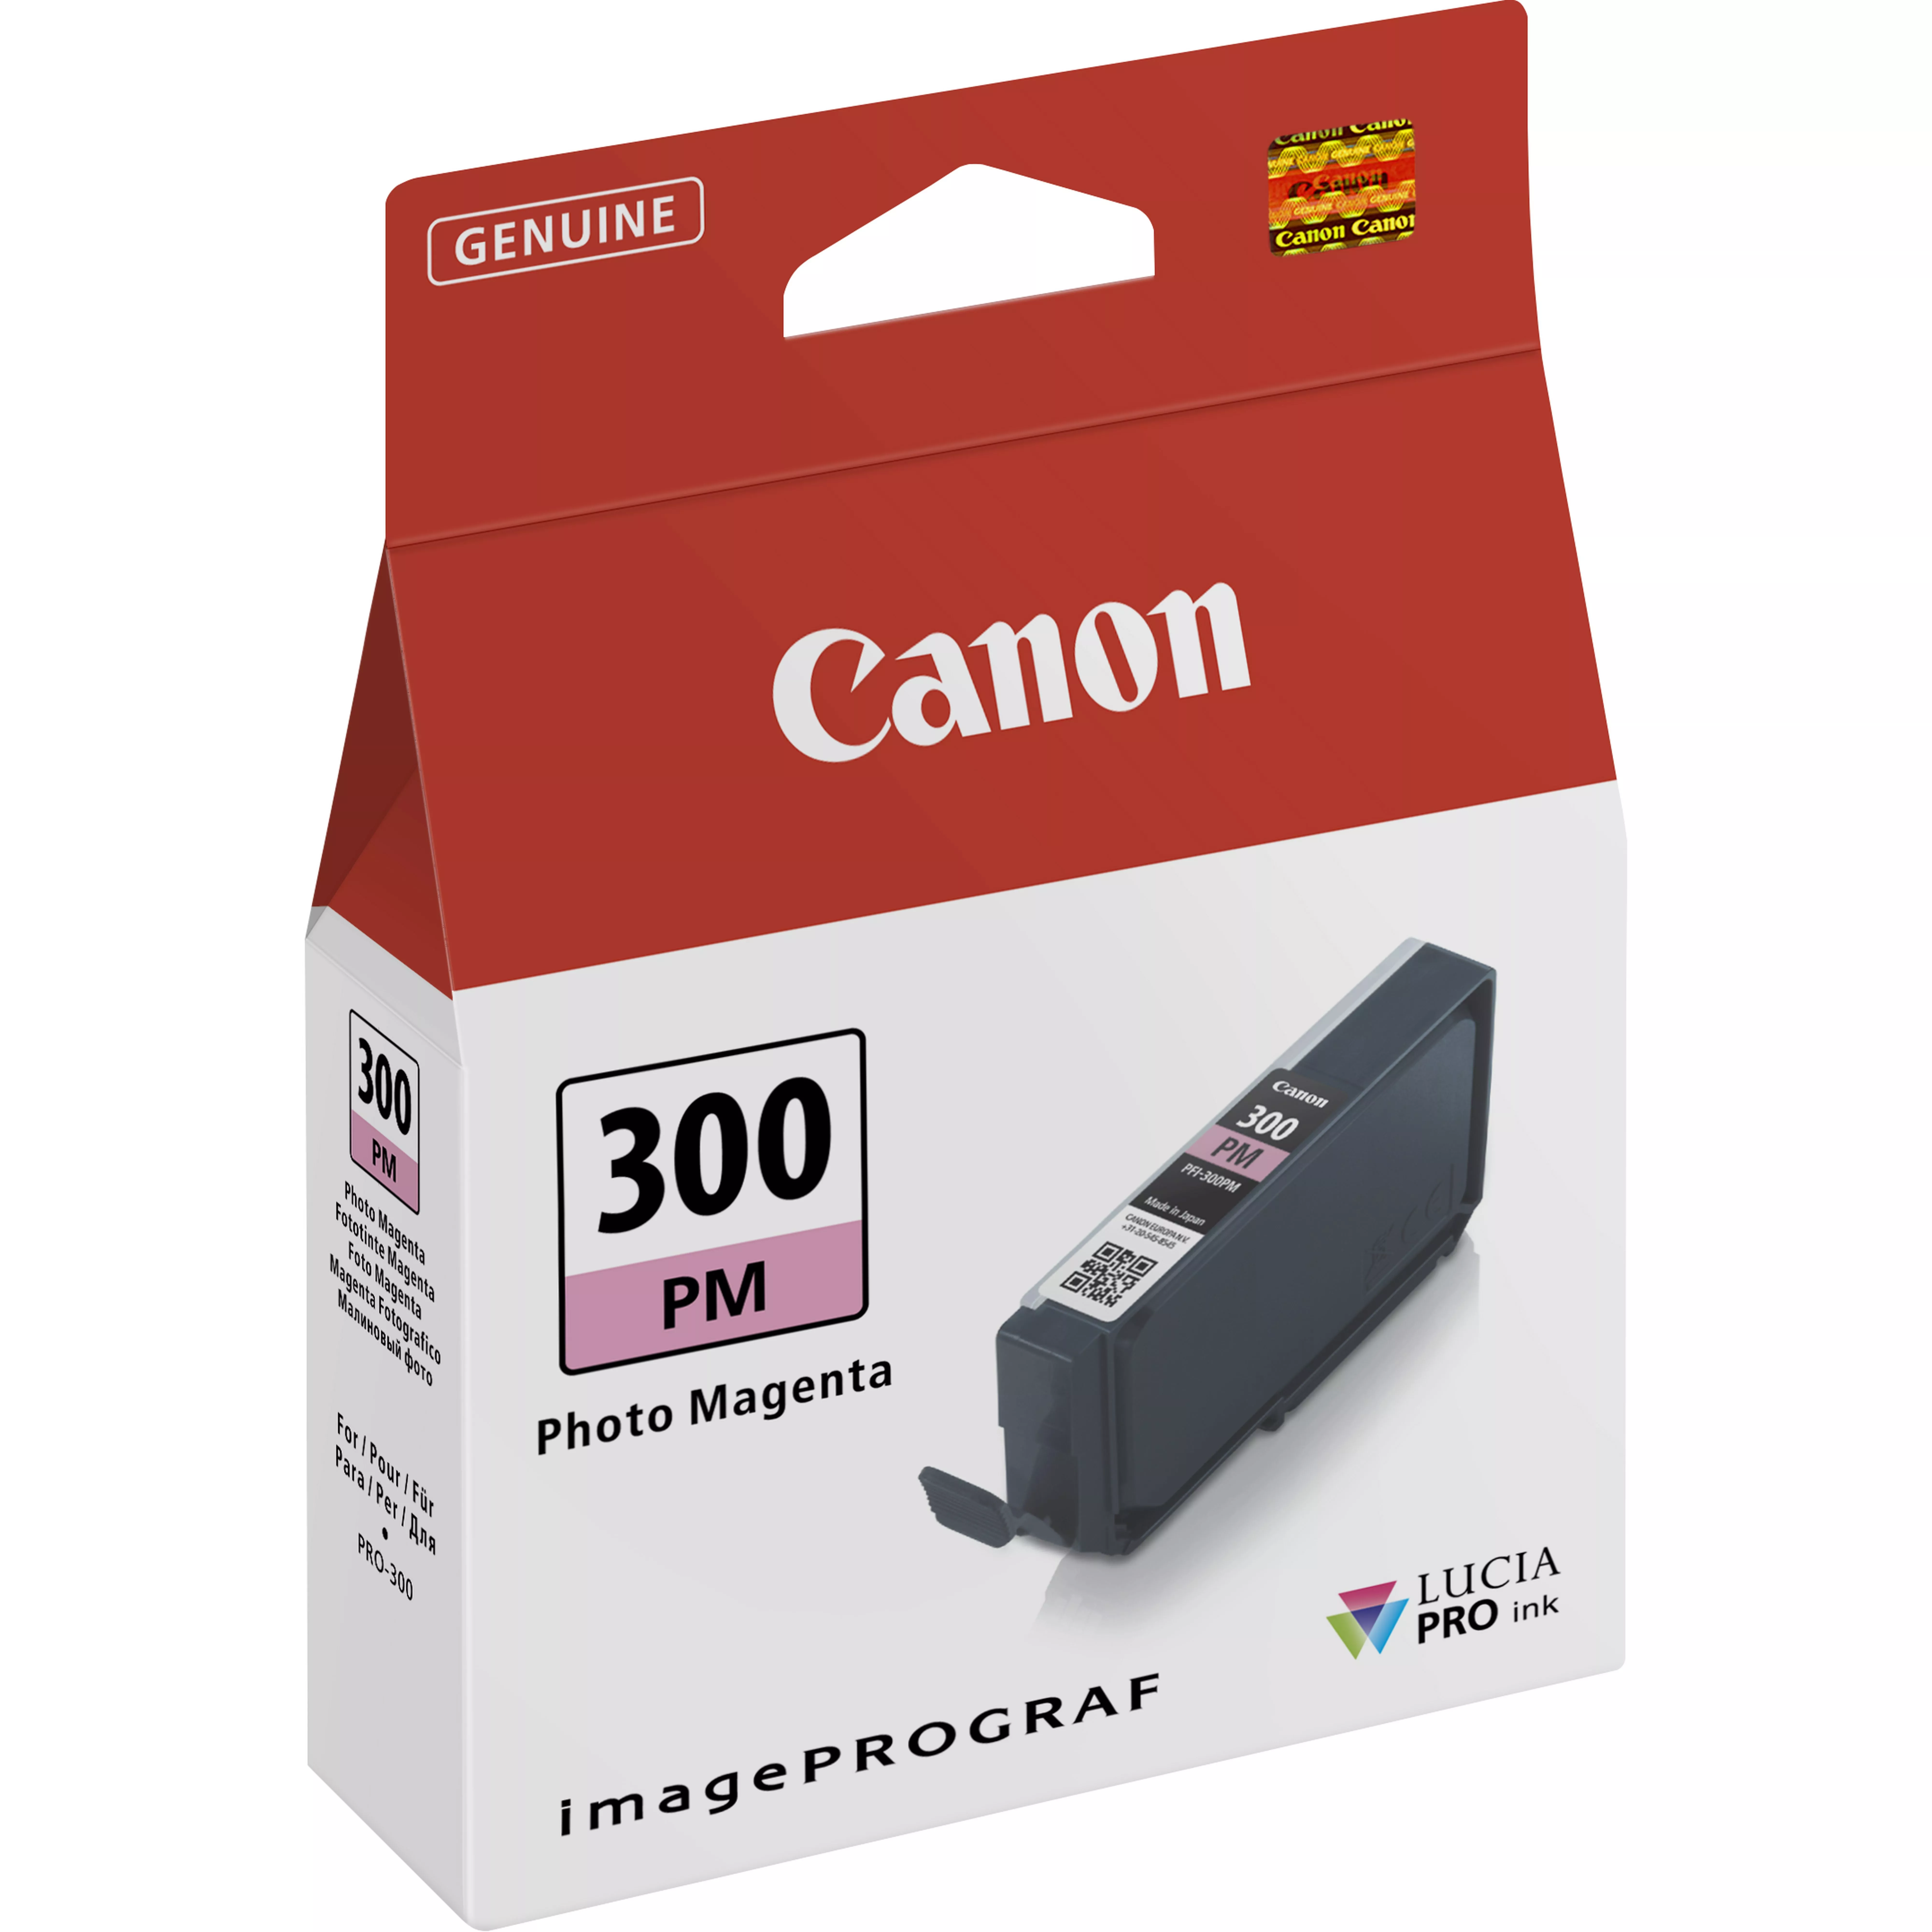 Achat CANON PFI-300 PM EUR/OCN photo magenta ink tank et autres produits de la marque Canon